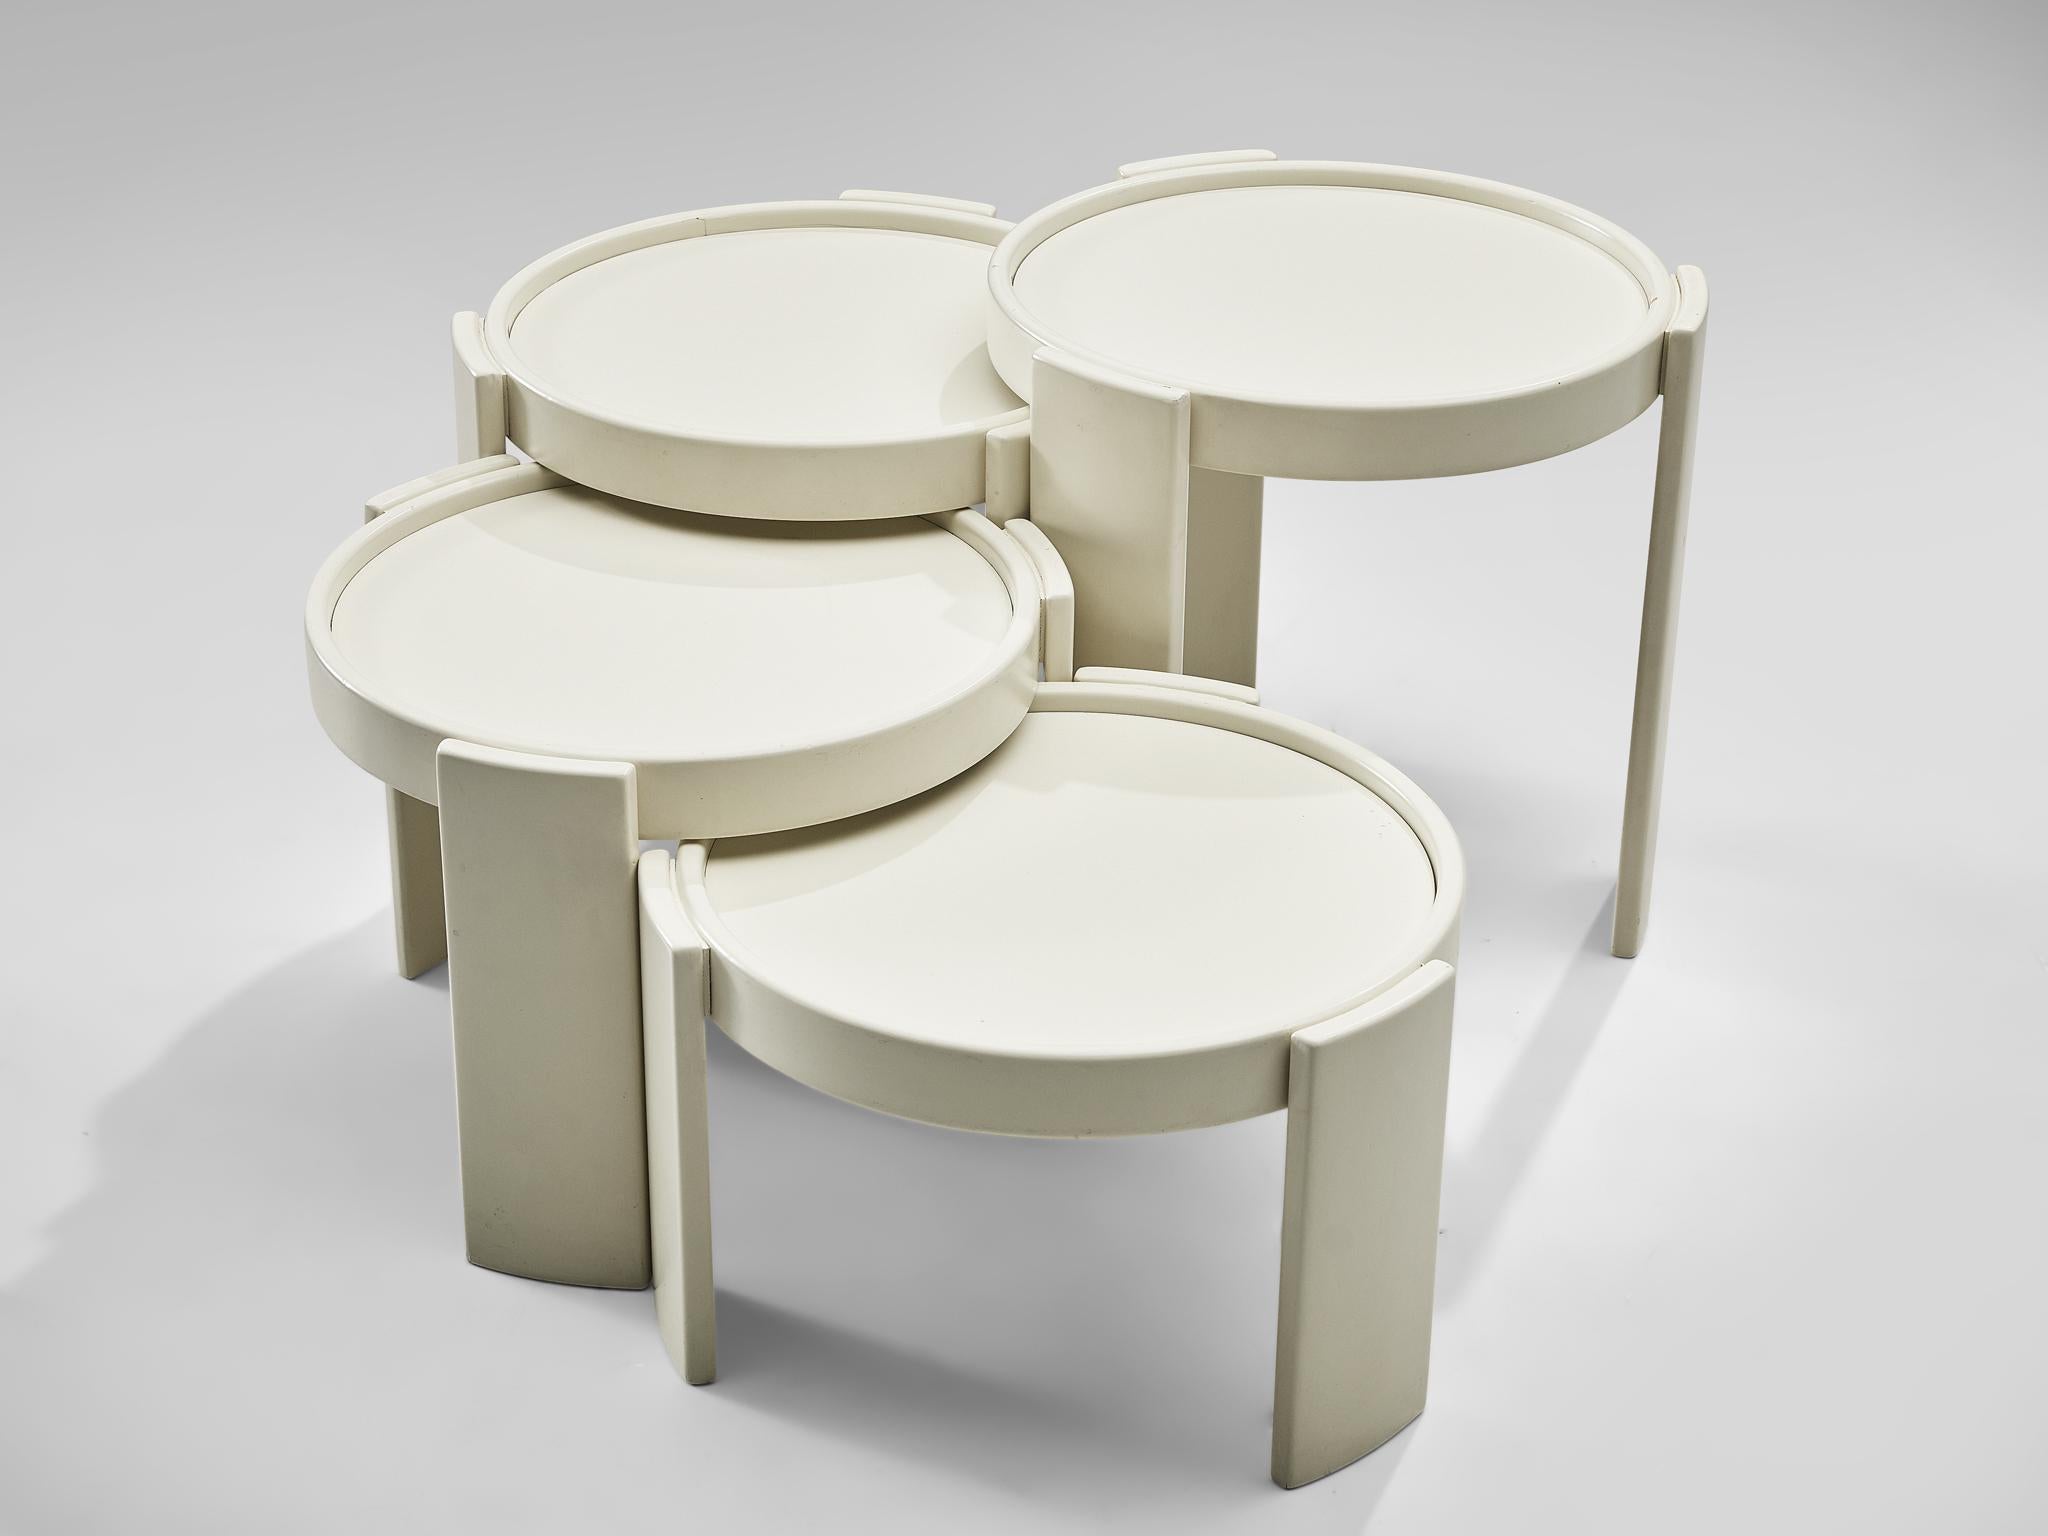 Italian Gianfranco Frattini '780' Nesting Table in White